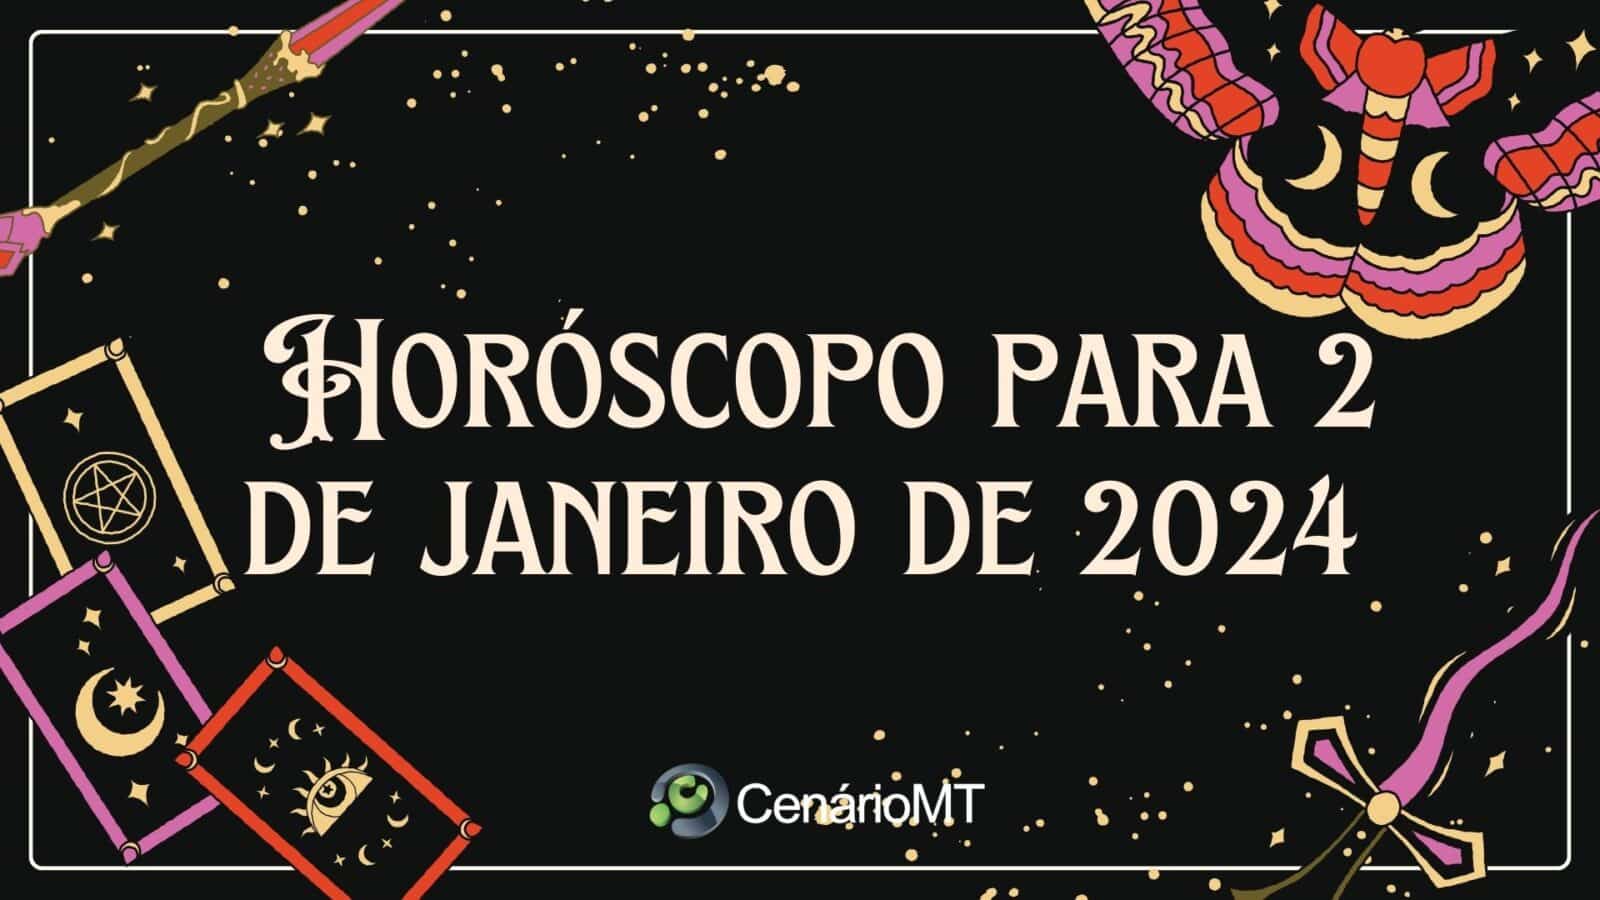 Previsão do Horóscopo para 2 de janeiro de 2024